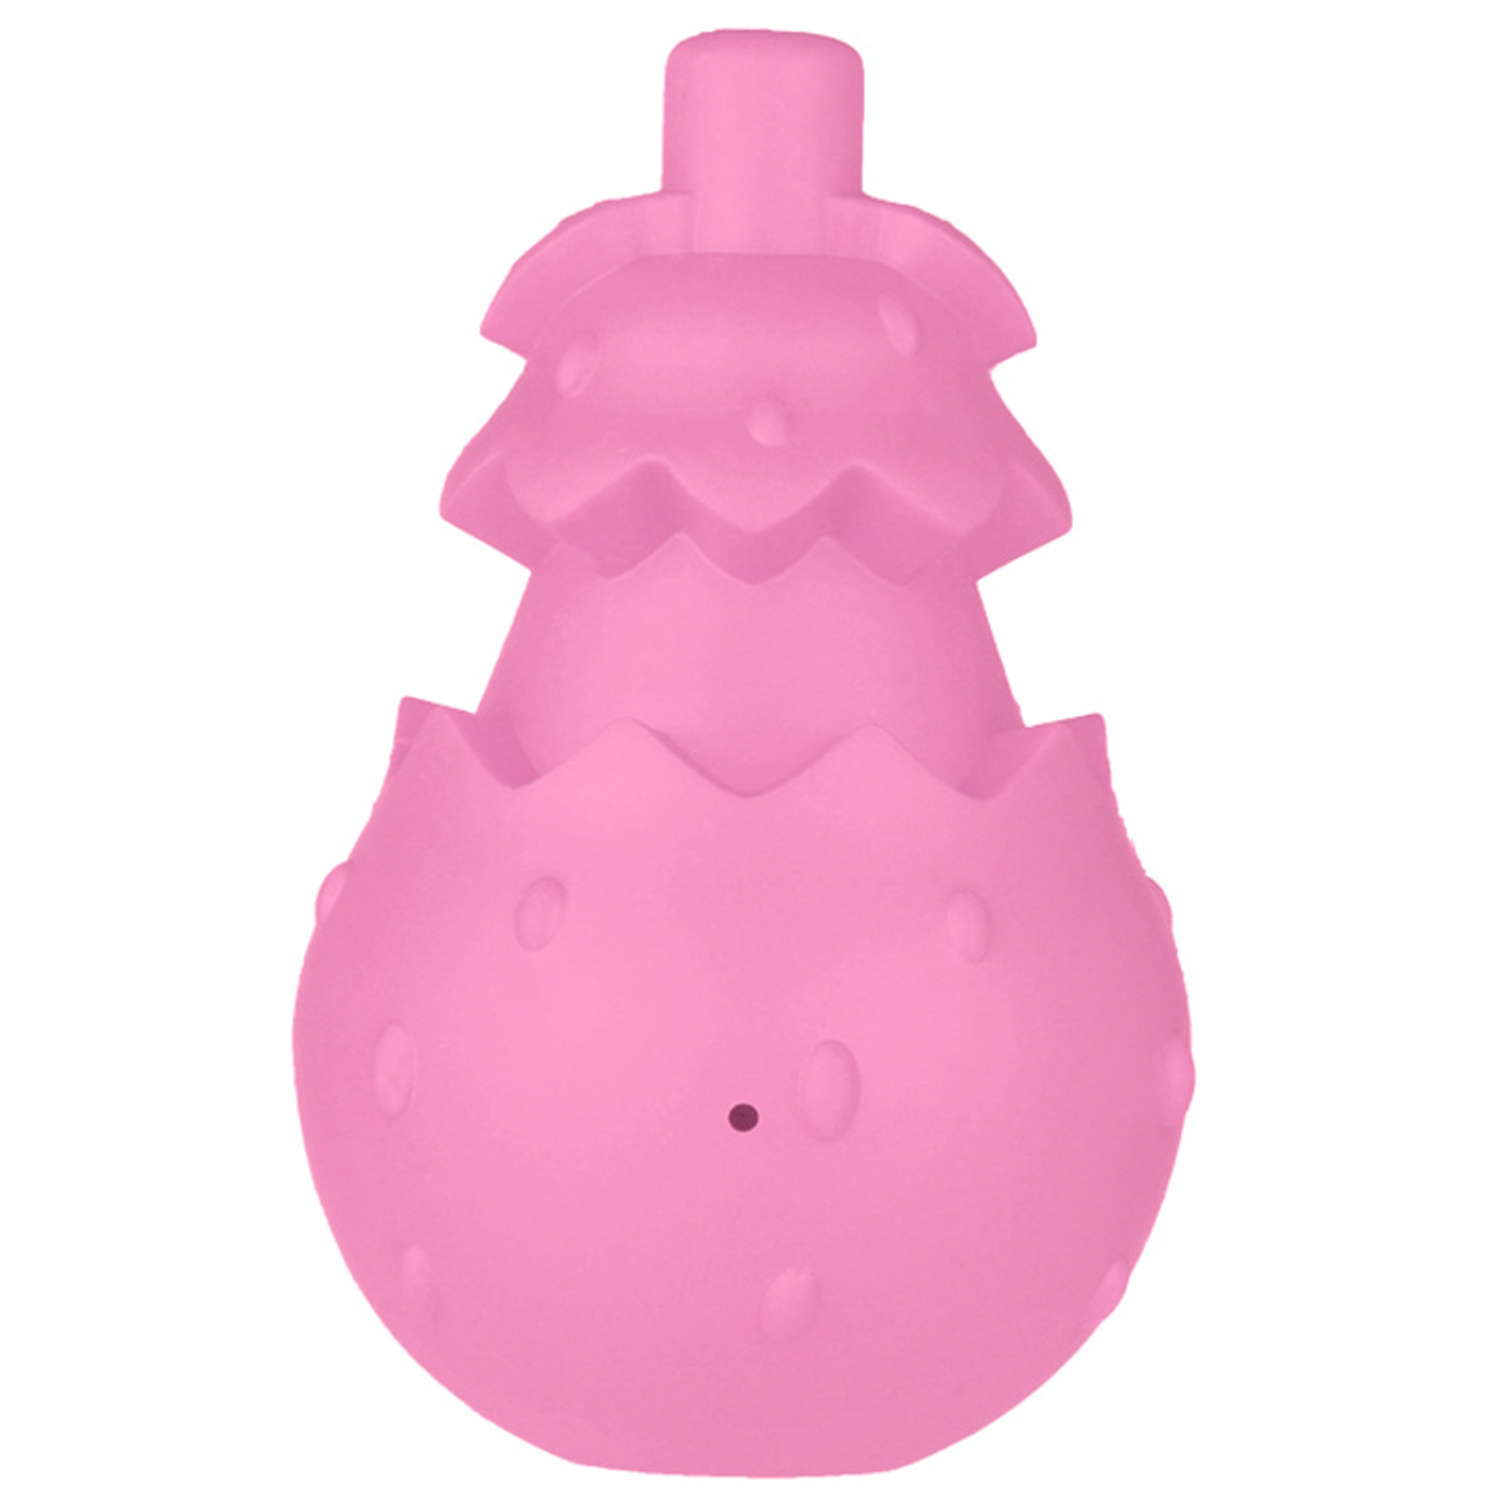 Mr.Kranch Mr.Kranch игрушка для собак с ароматом бекона, розовая (8х13 см) mr kranch mr kranch игрушка сова для собак с ароматом бекона розовая 13 см